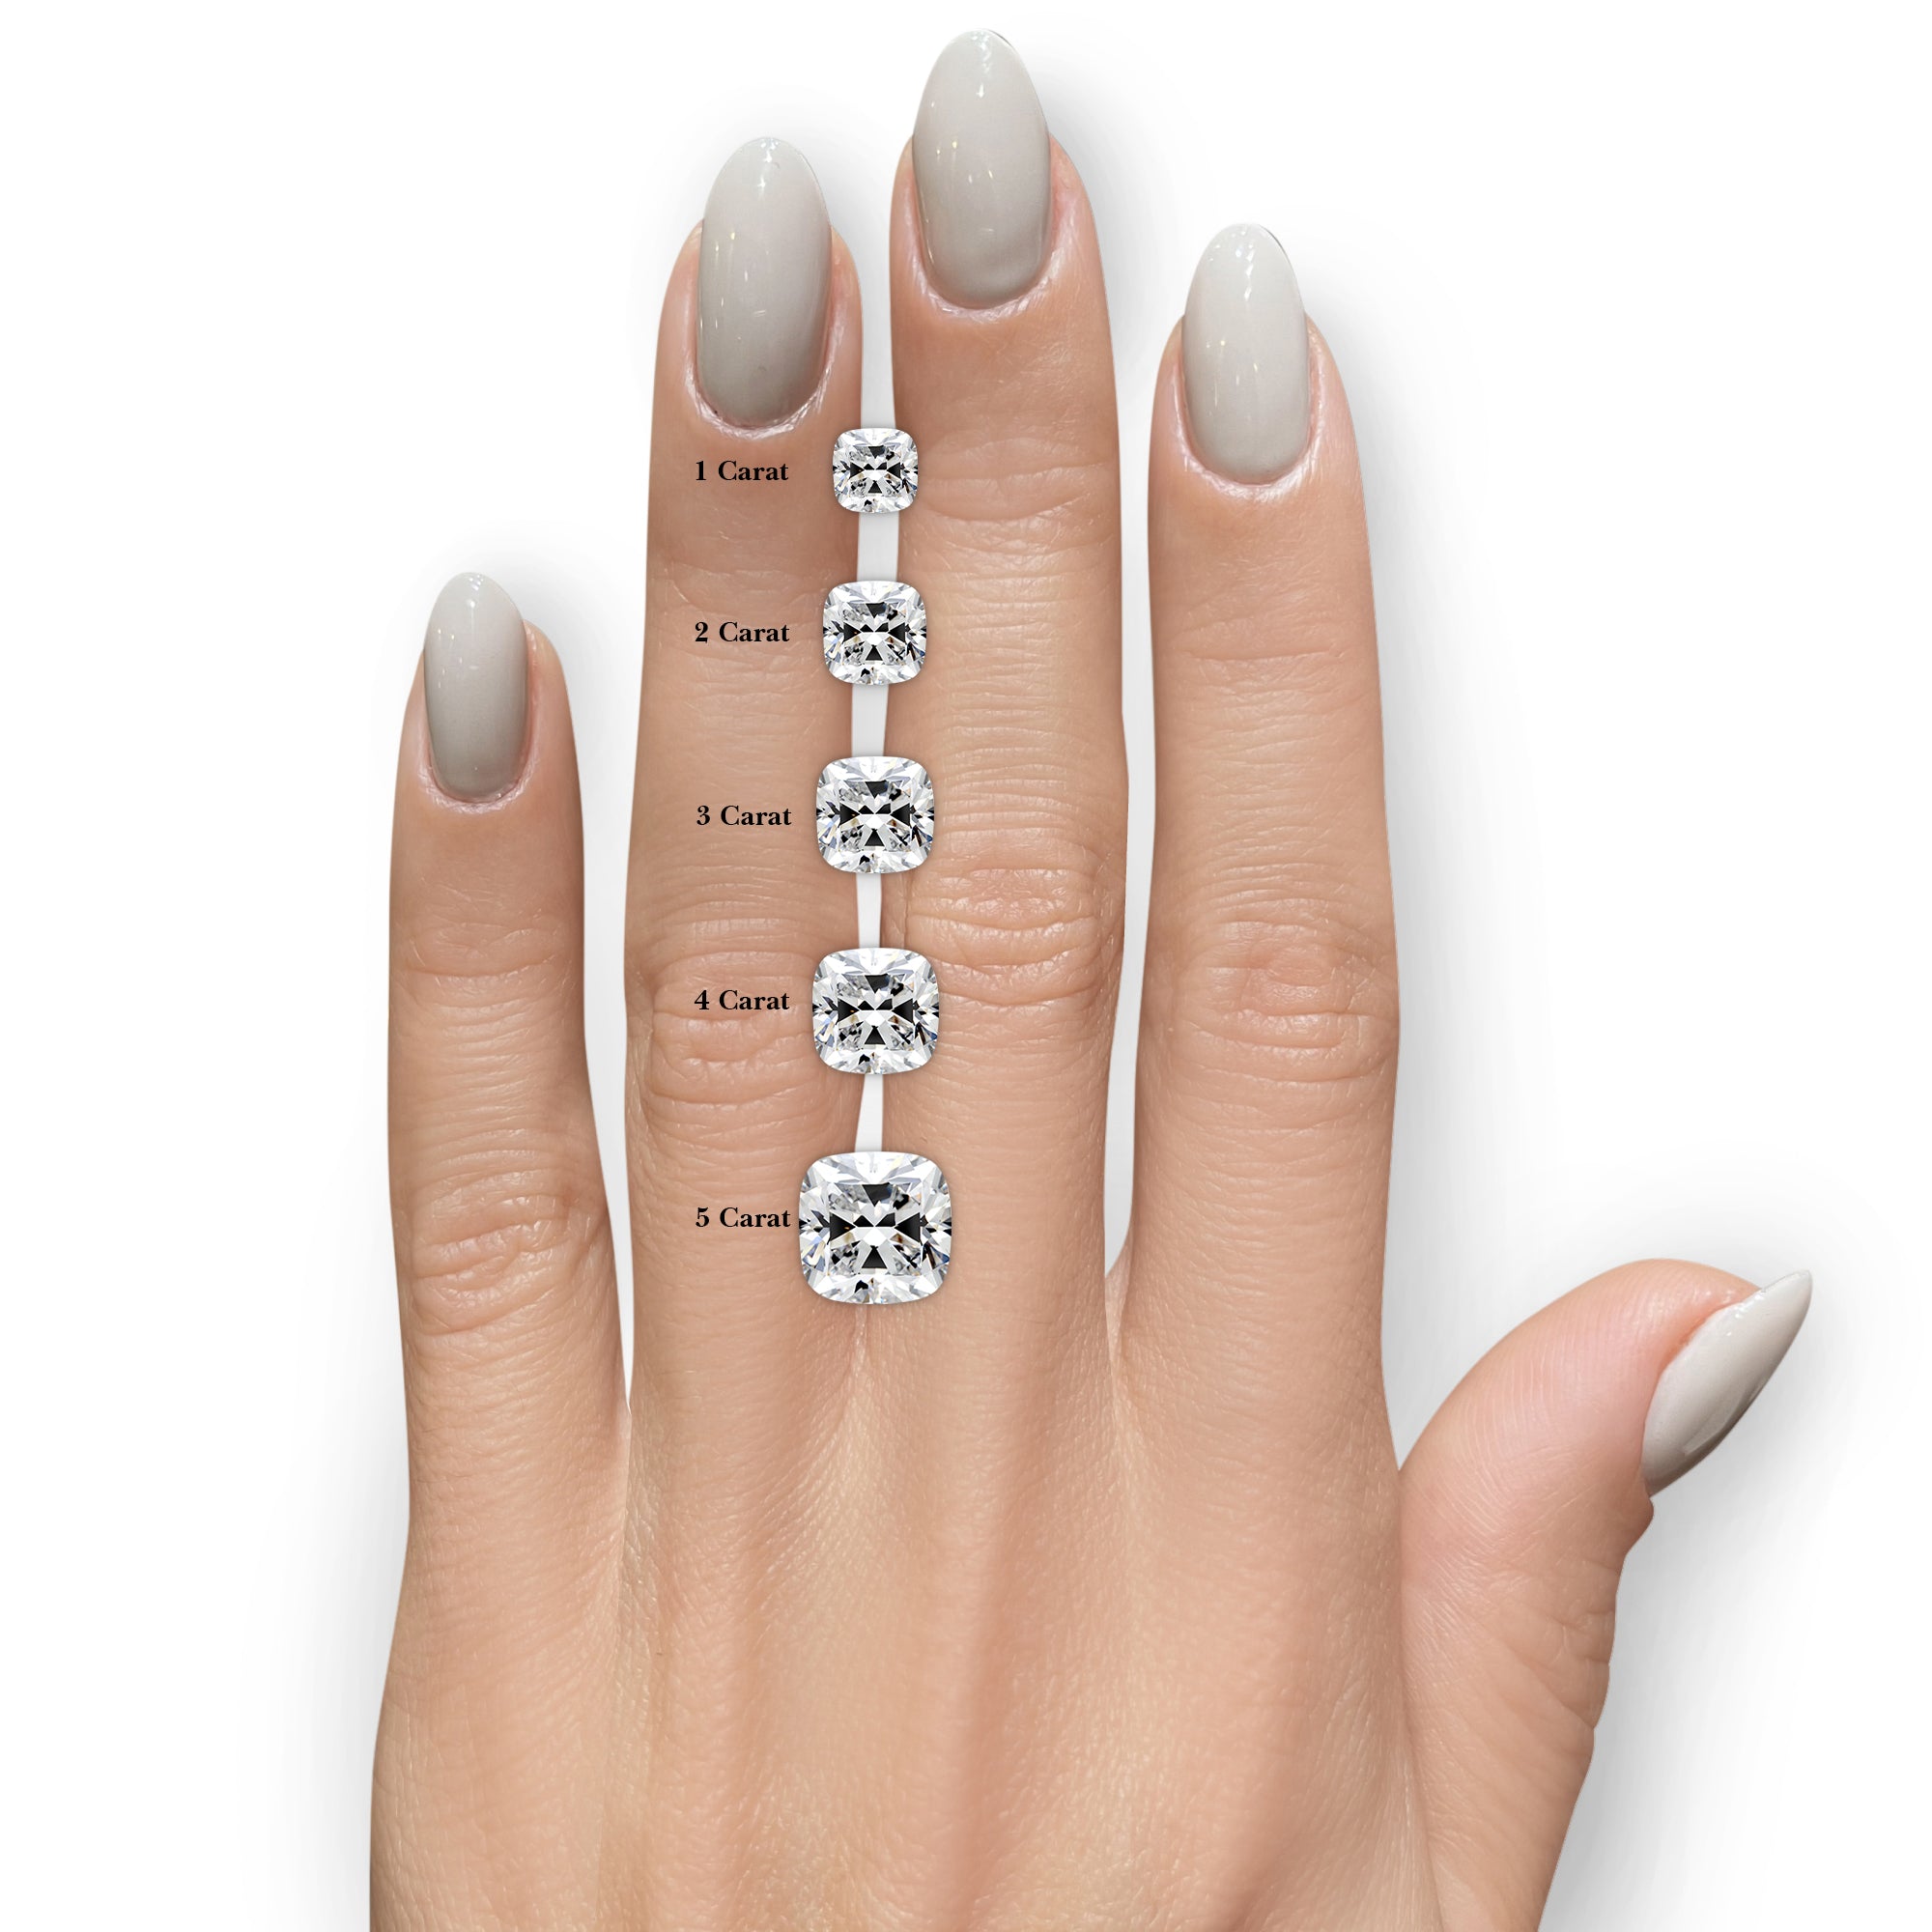 Lissete Diamond Engagement Ring -18K White Gold